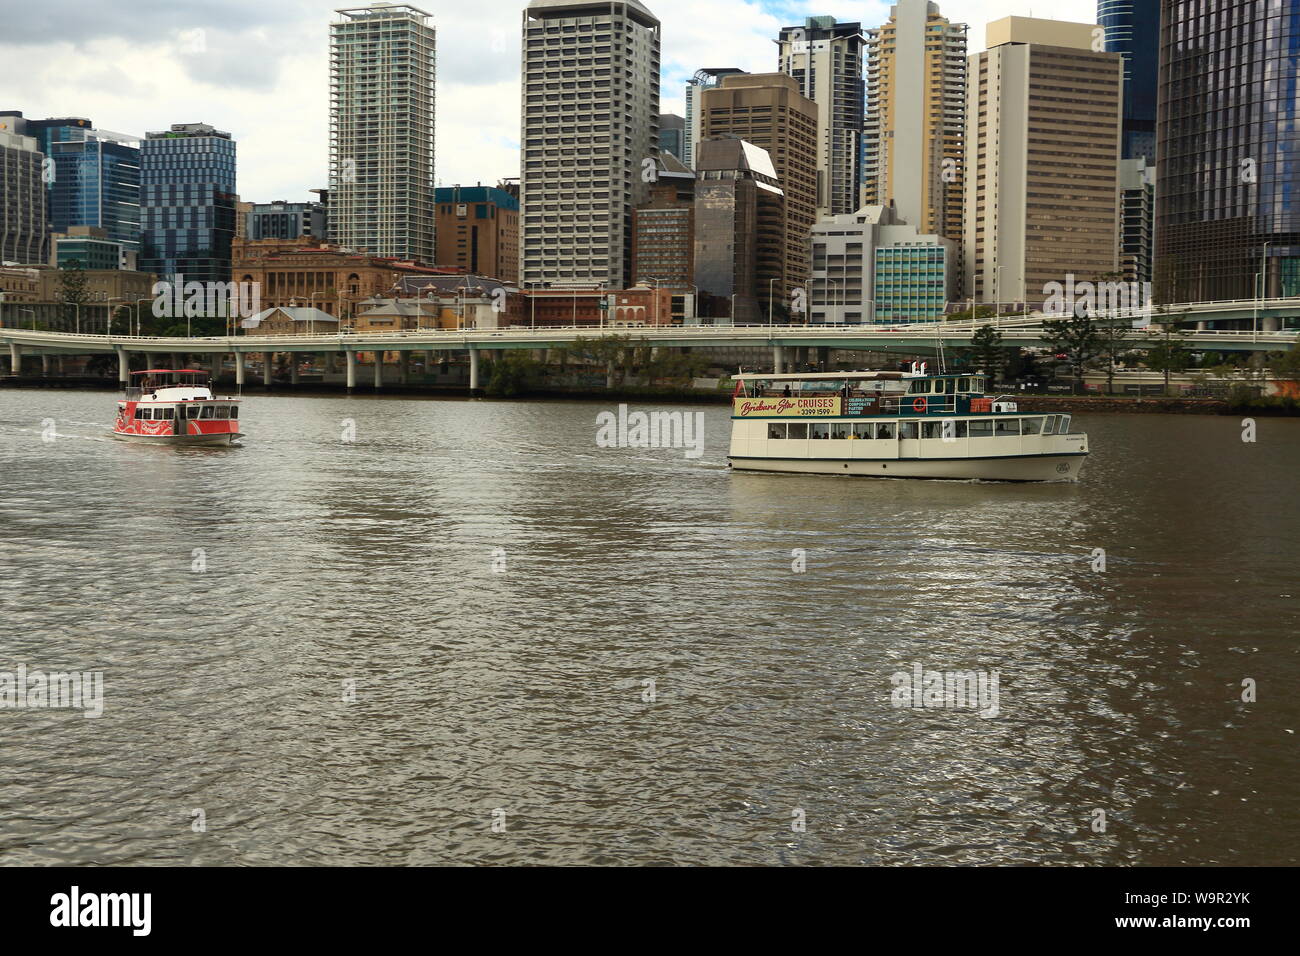 Le bac sur la rivière Brisbane City Banque D'Images